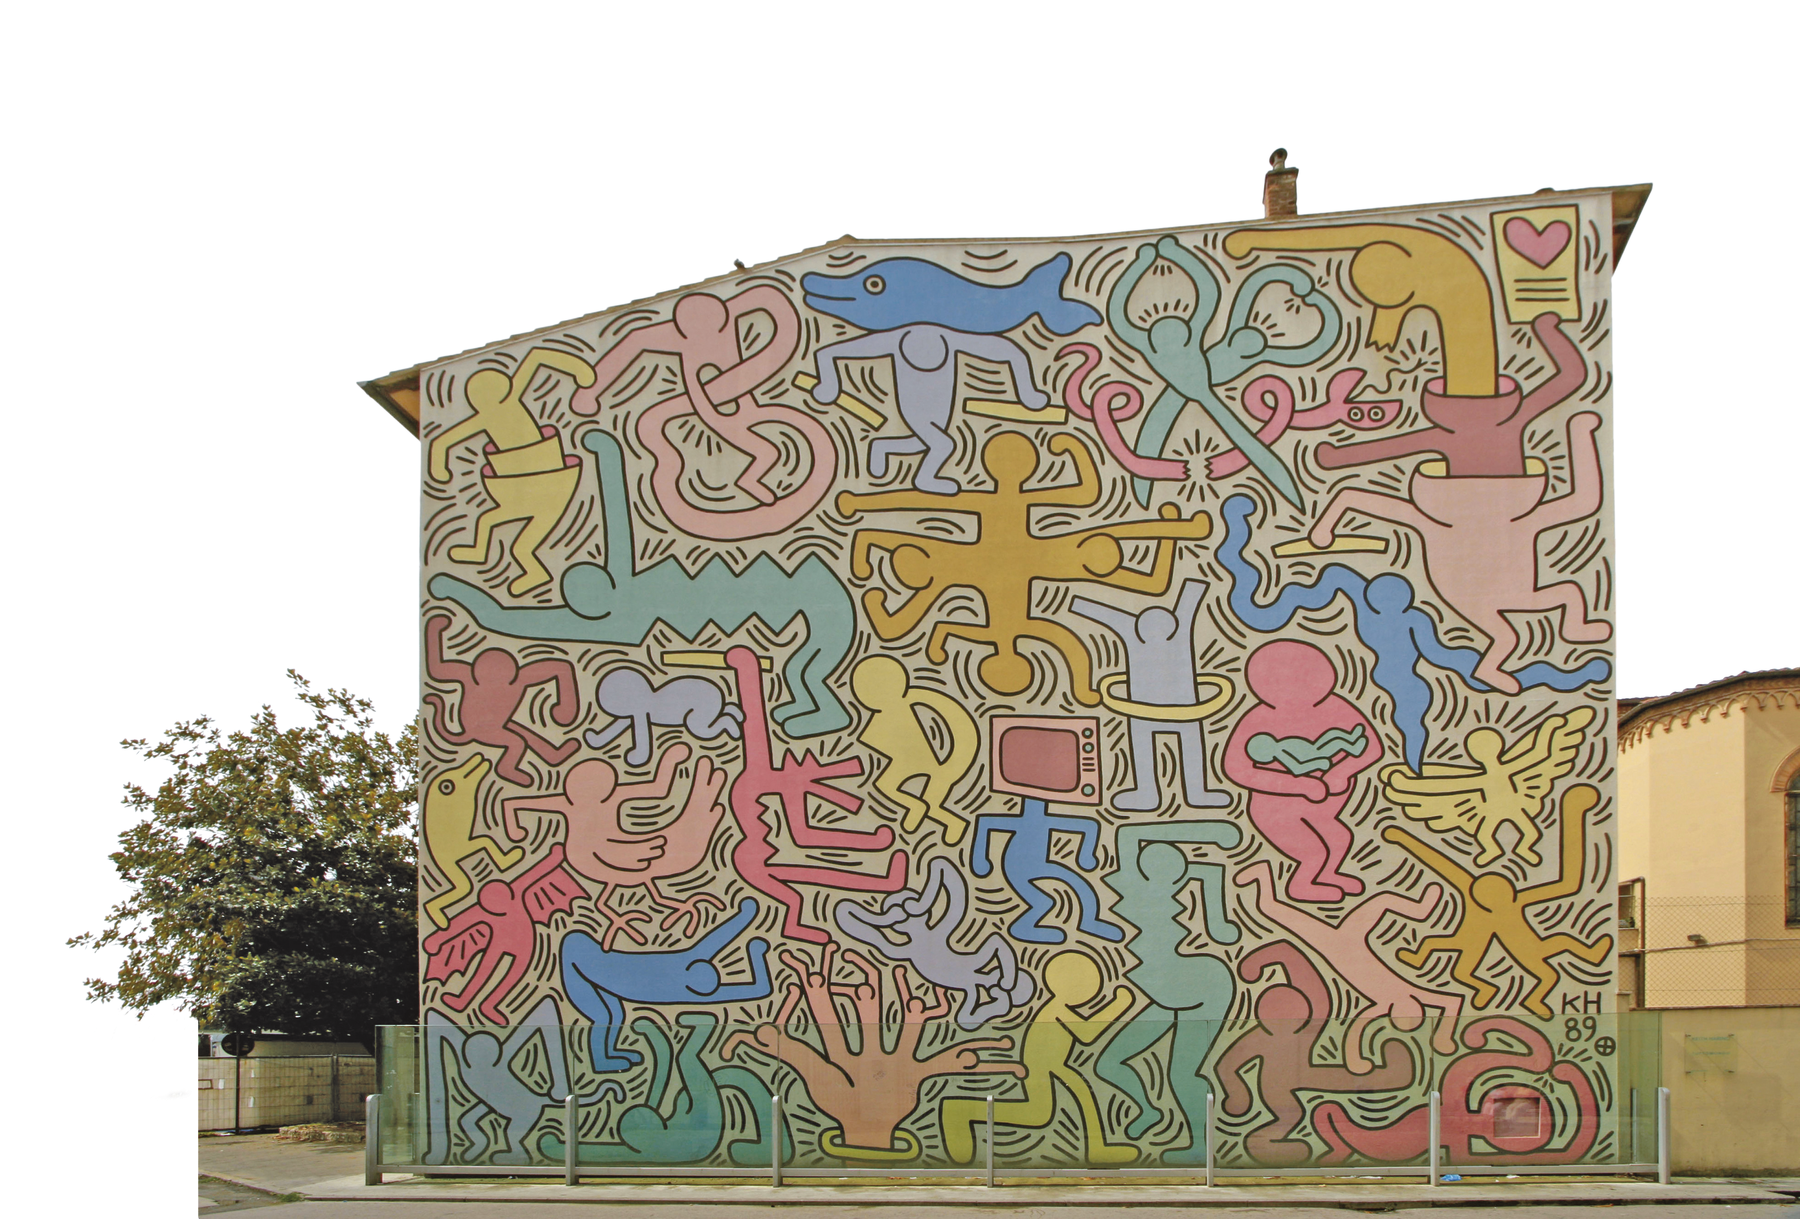 Fotografia. Pintura mural realizada na parede lateral de uma casa de dois andares. A parede foi toda recoberta por figuras compostas de formas de pessoas, objetos e animais unidas. As figuras são colorida de azul, verde, tons de rosa, amarelo e laranja.